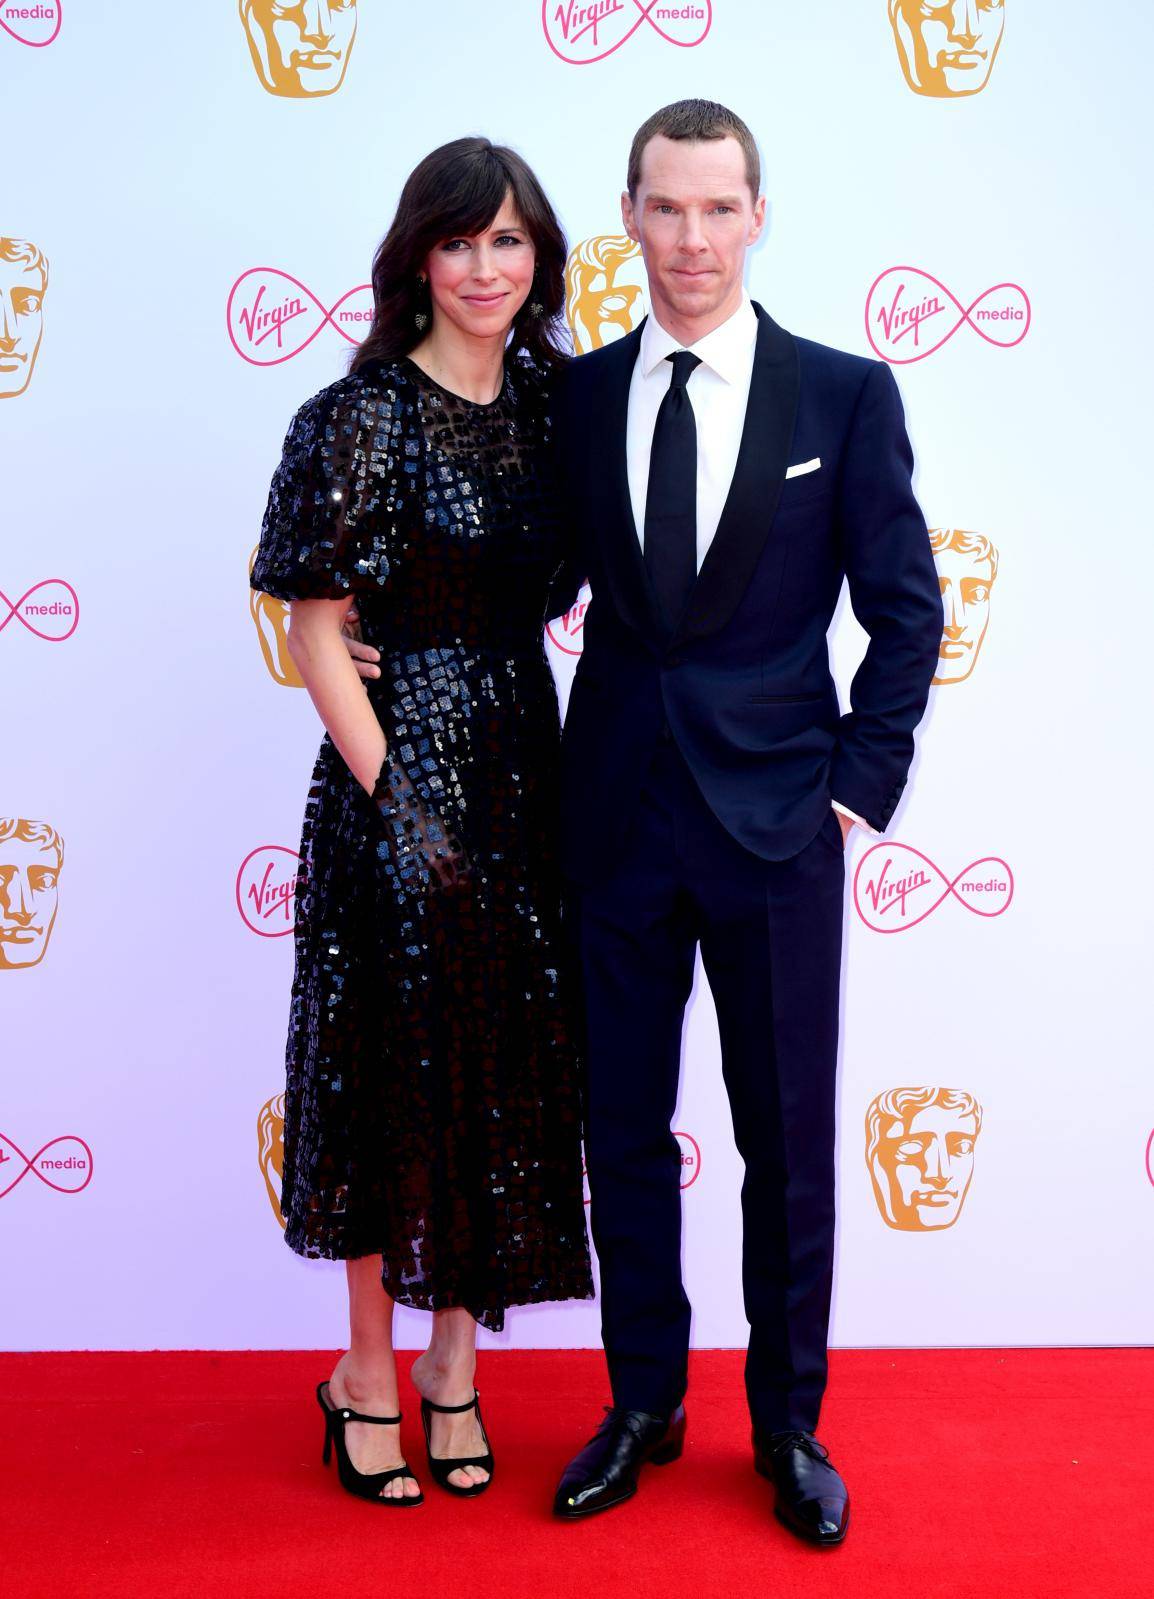 Virgin Media BAFTA TV Awards 2019 - Arrivals - London